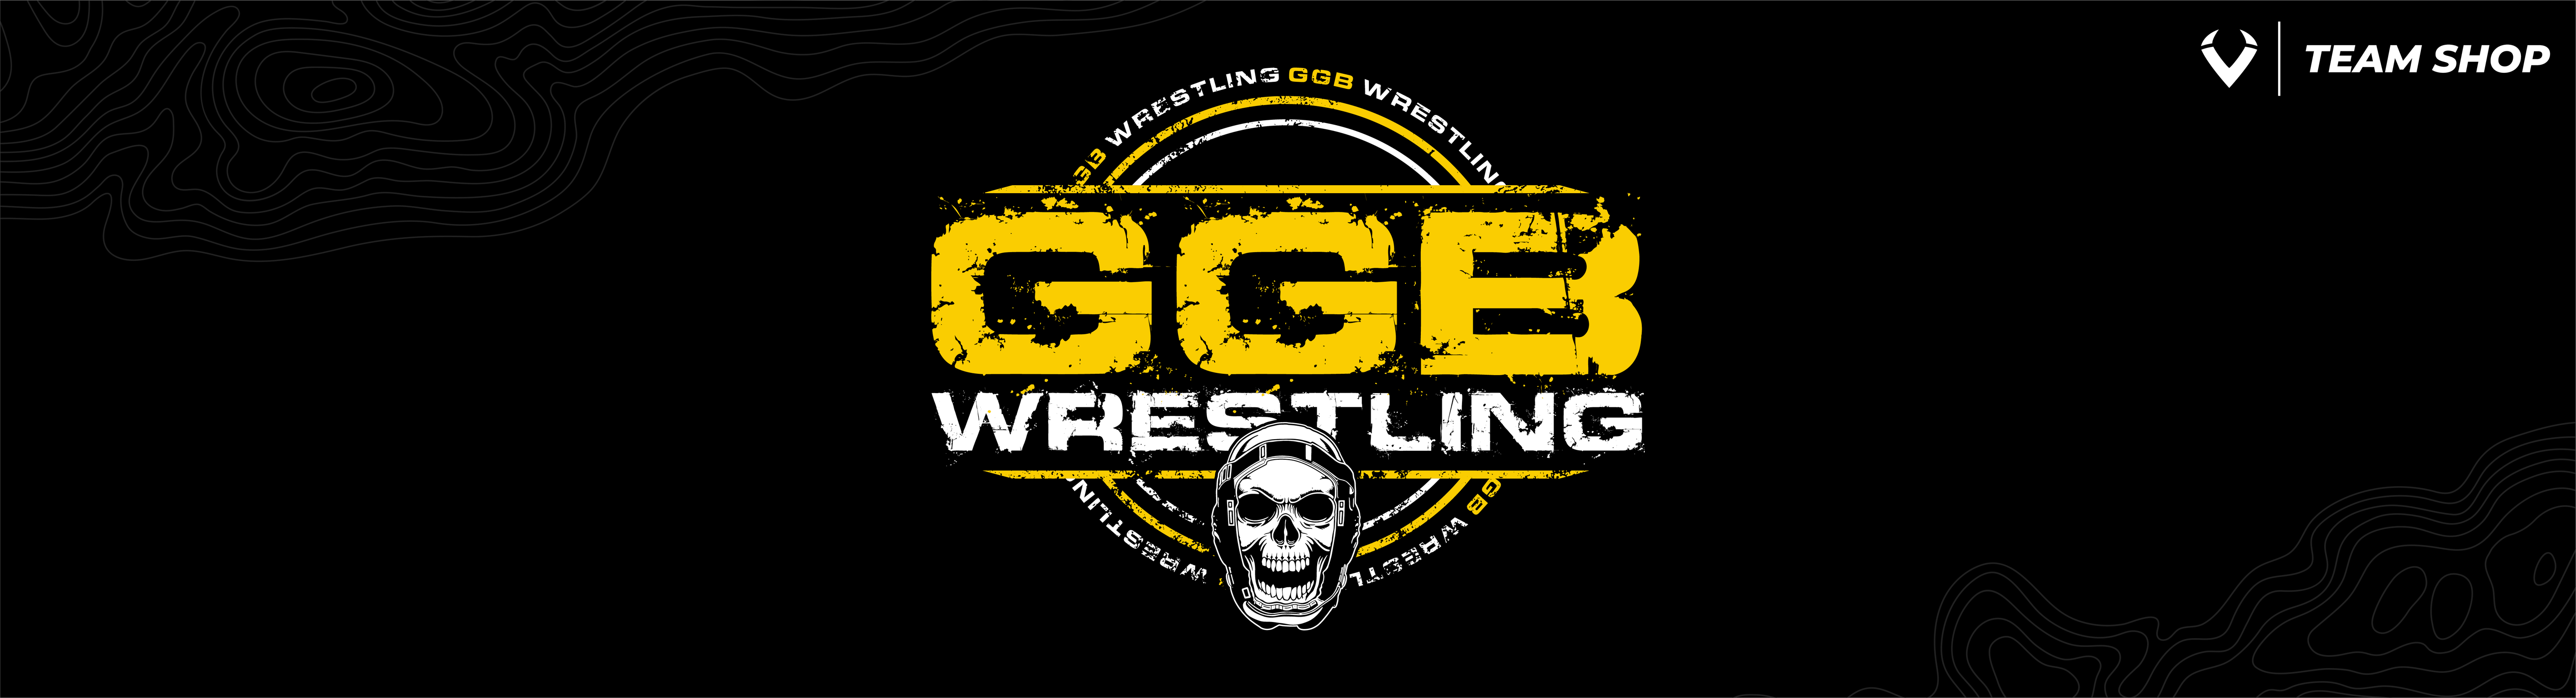 GGB Wrestling